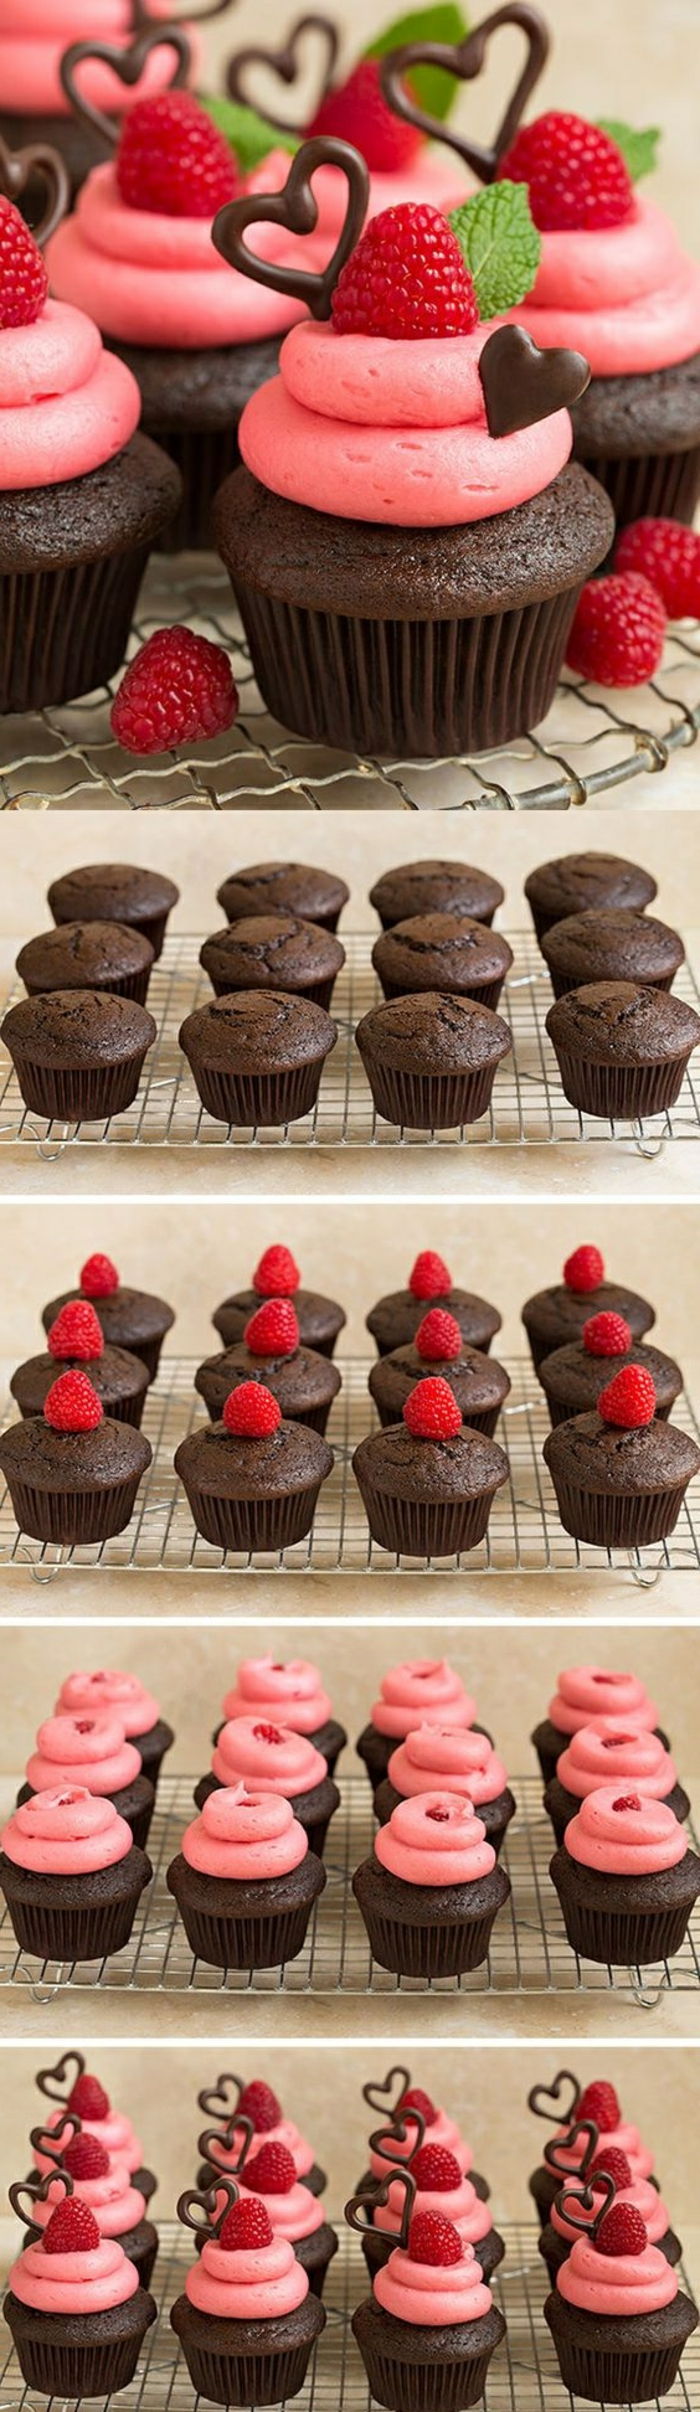 Cupcakes versierd met aardbeien, pepermunt en chocoladeharten